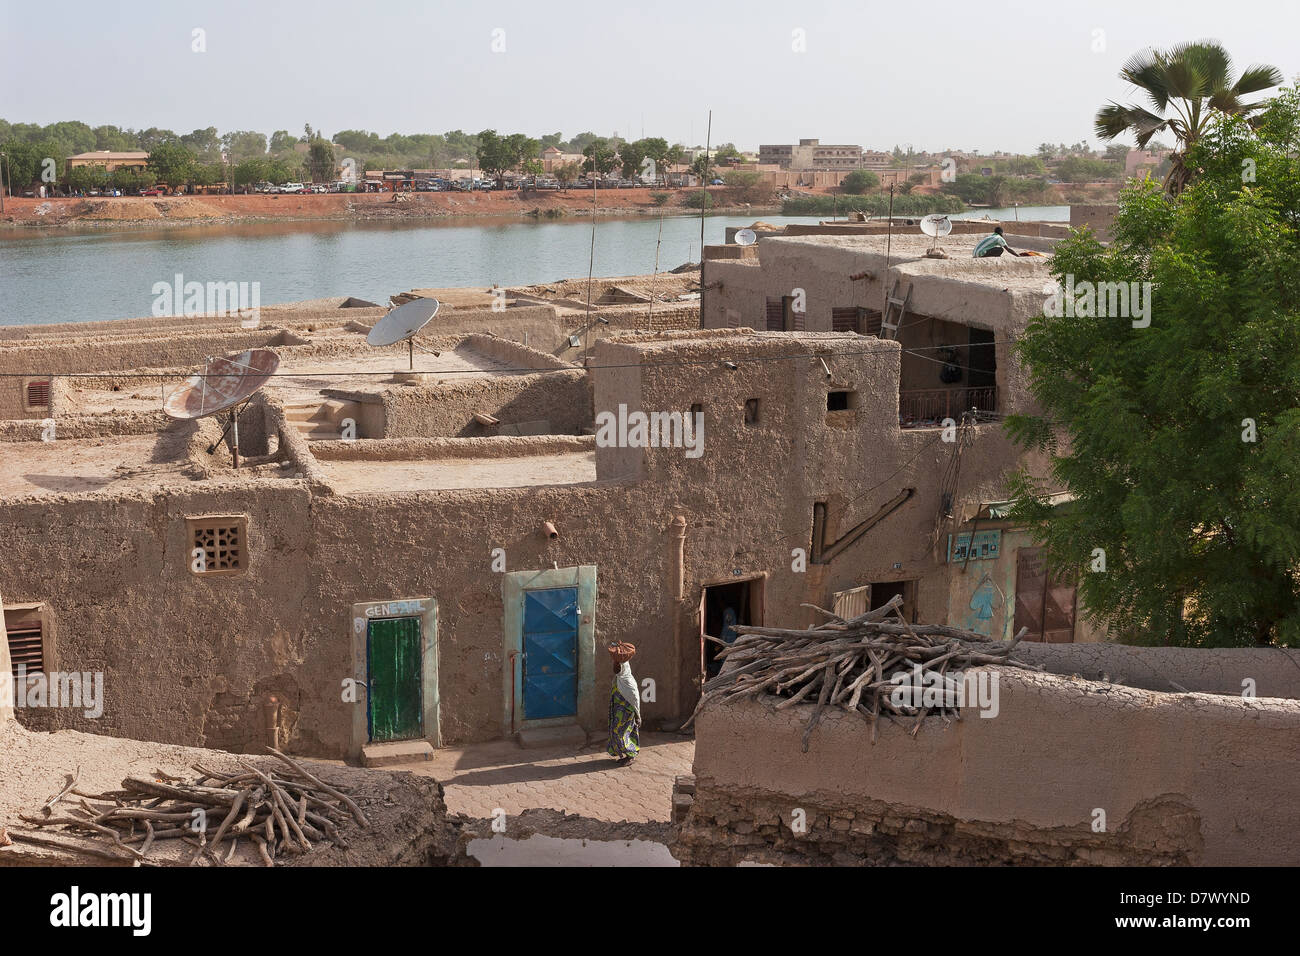 Vue sur rue et des toits de bâtiments de construction traditionnelle, la boue en terre de fleuve Niger, Mopti, Mali, Afrique de l'Ouest Banque D'Images